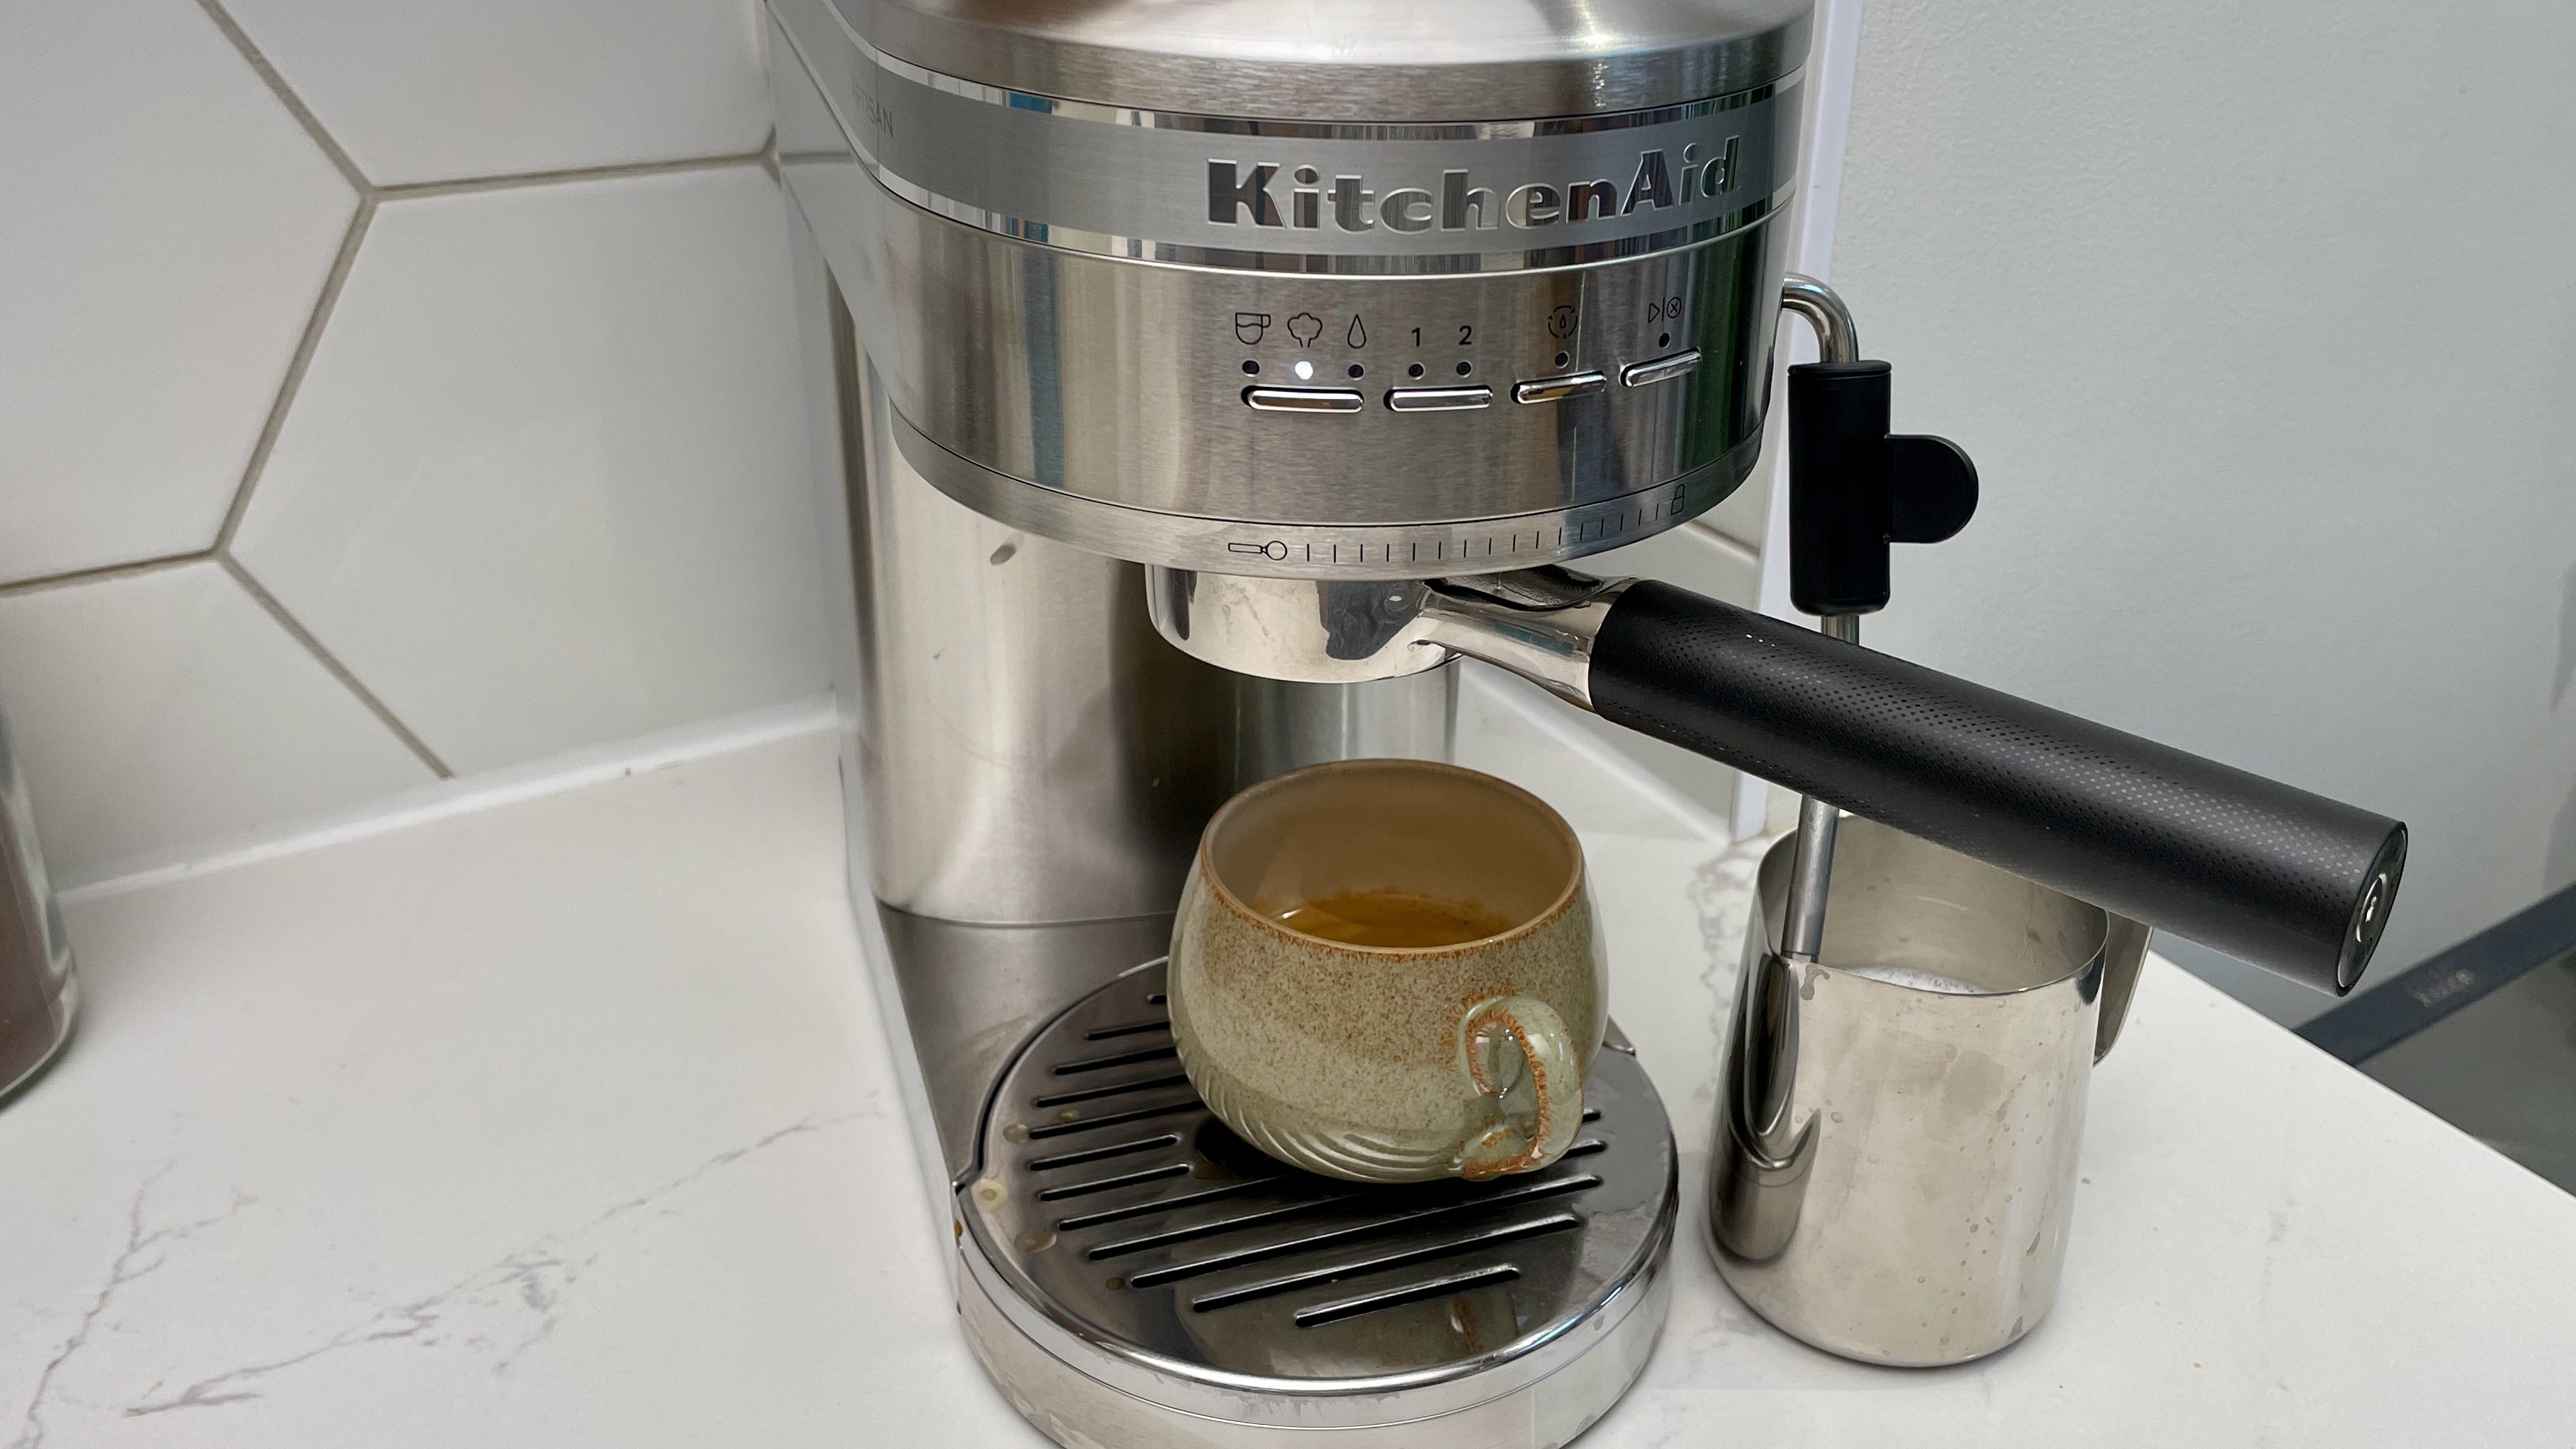 Mesin espresso KitchenAid Artisan KES6503 digunakan untuk menyiapkan espresso